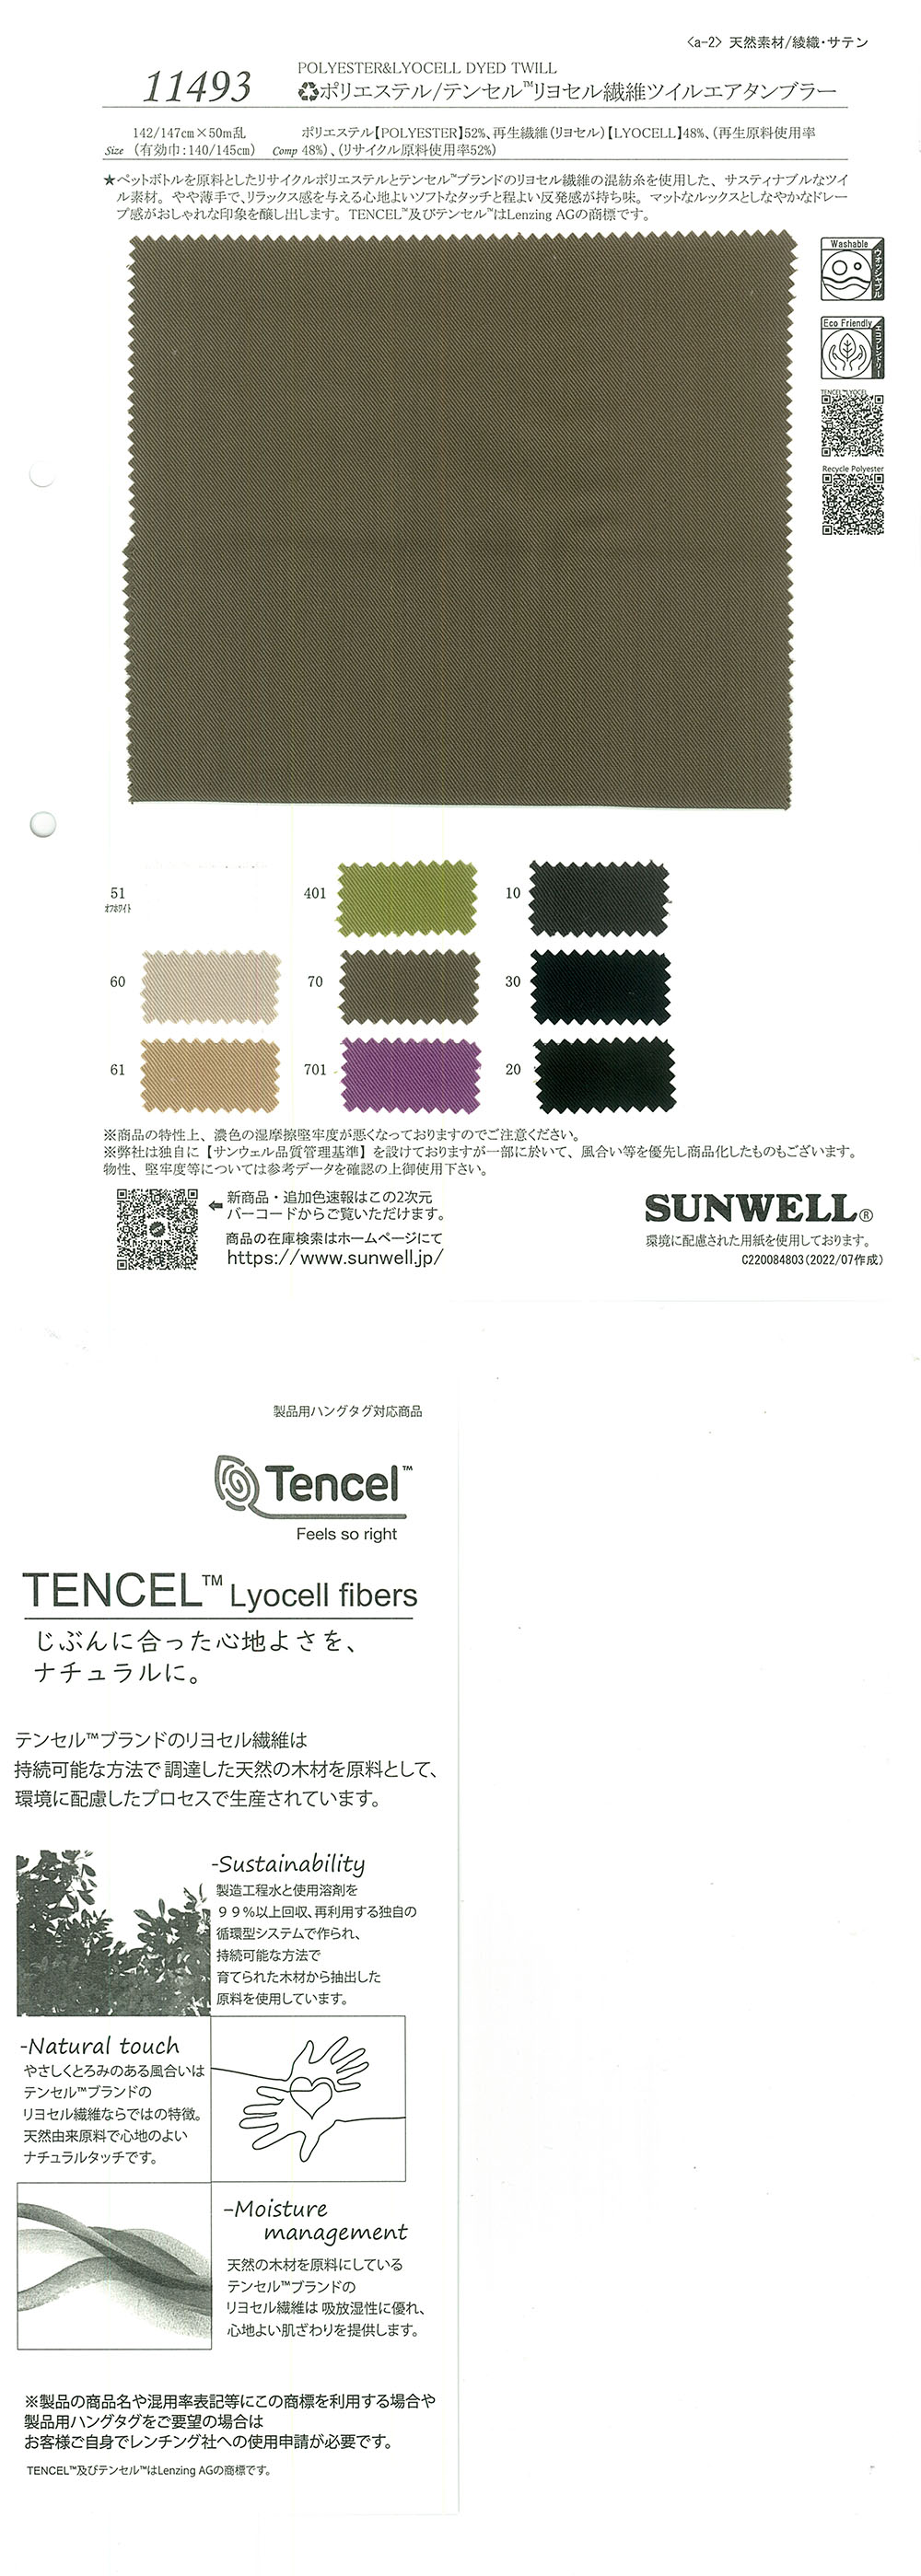 11493 (Li) Poliéster/Tencel (TM) Lyocell Fiber Twill Air Tubler[Fabrica Textil] SUNWELL